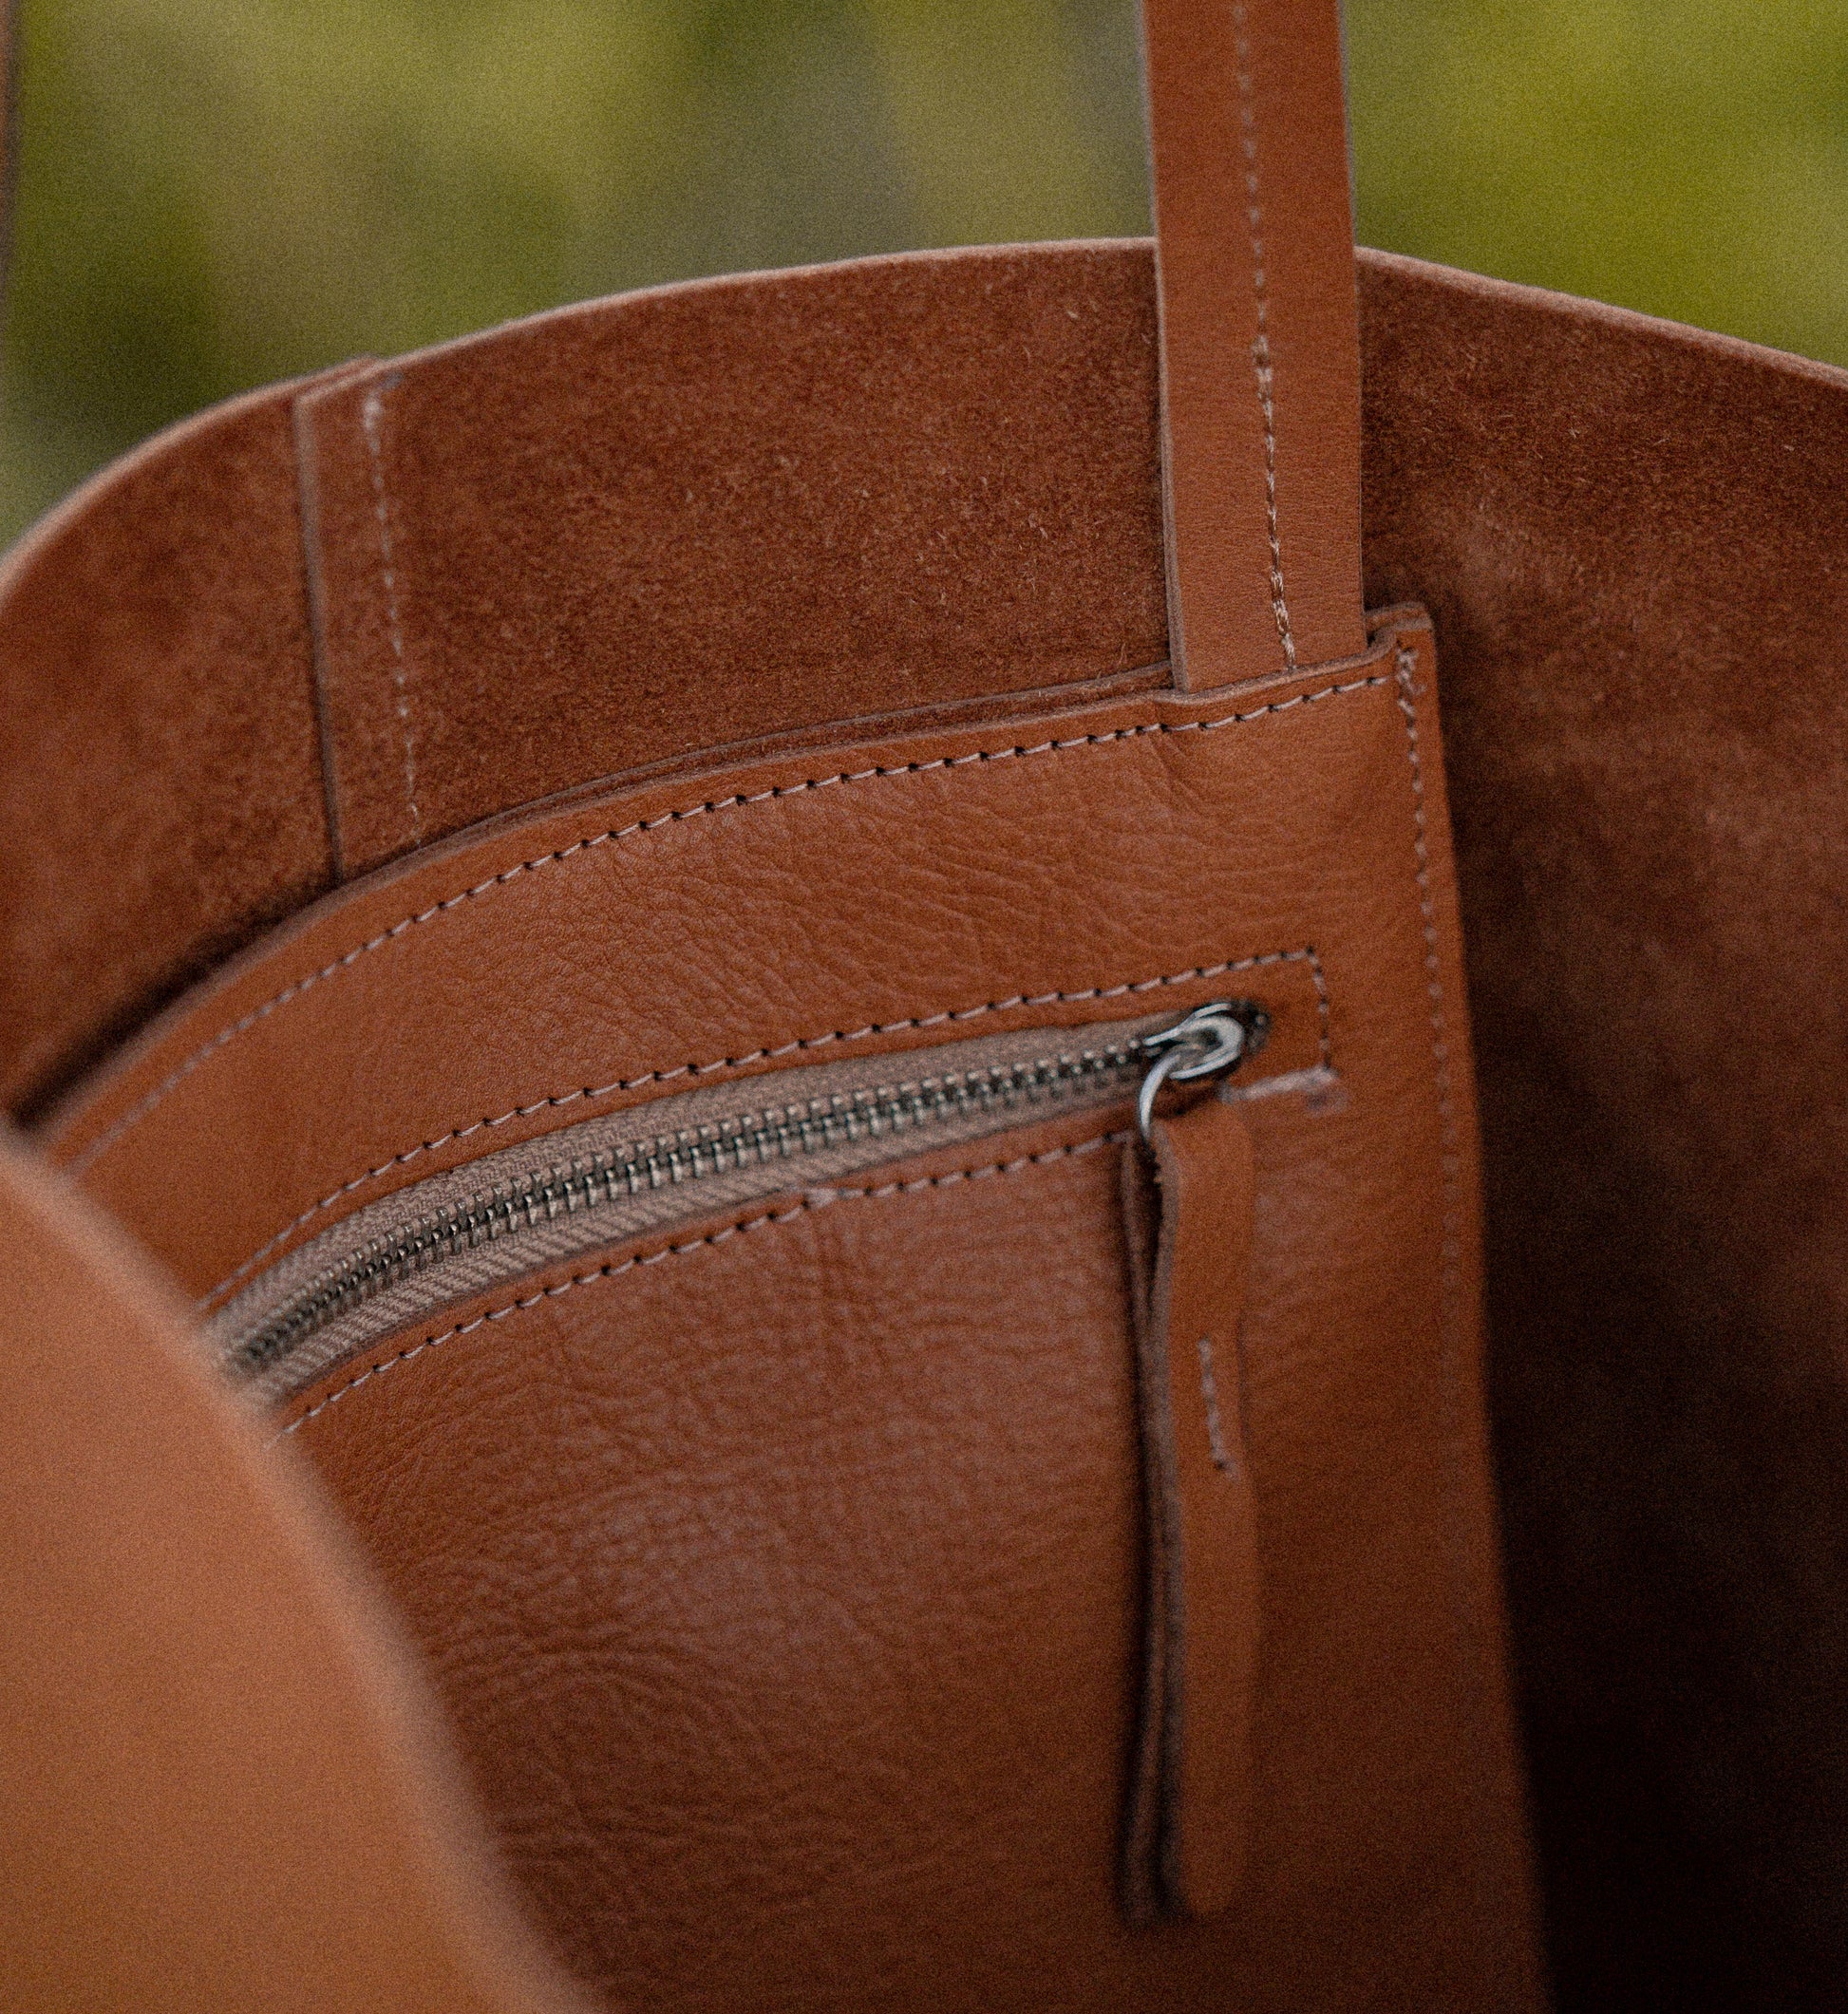 leather alma bag